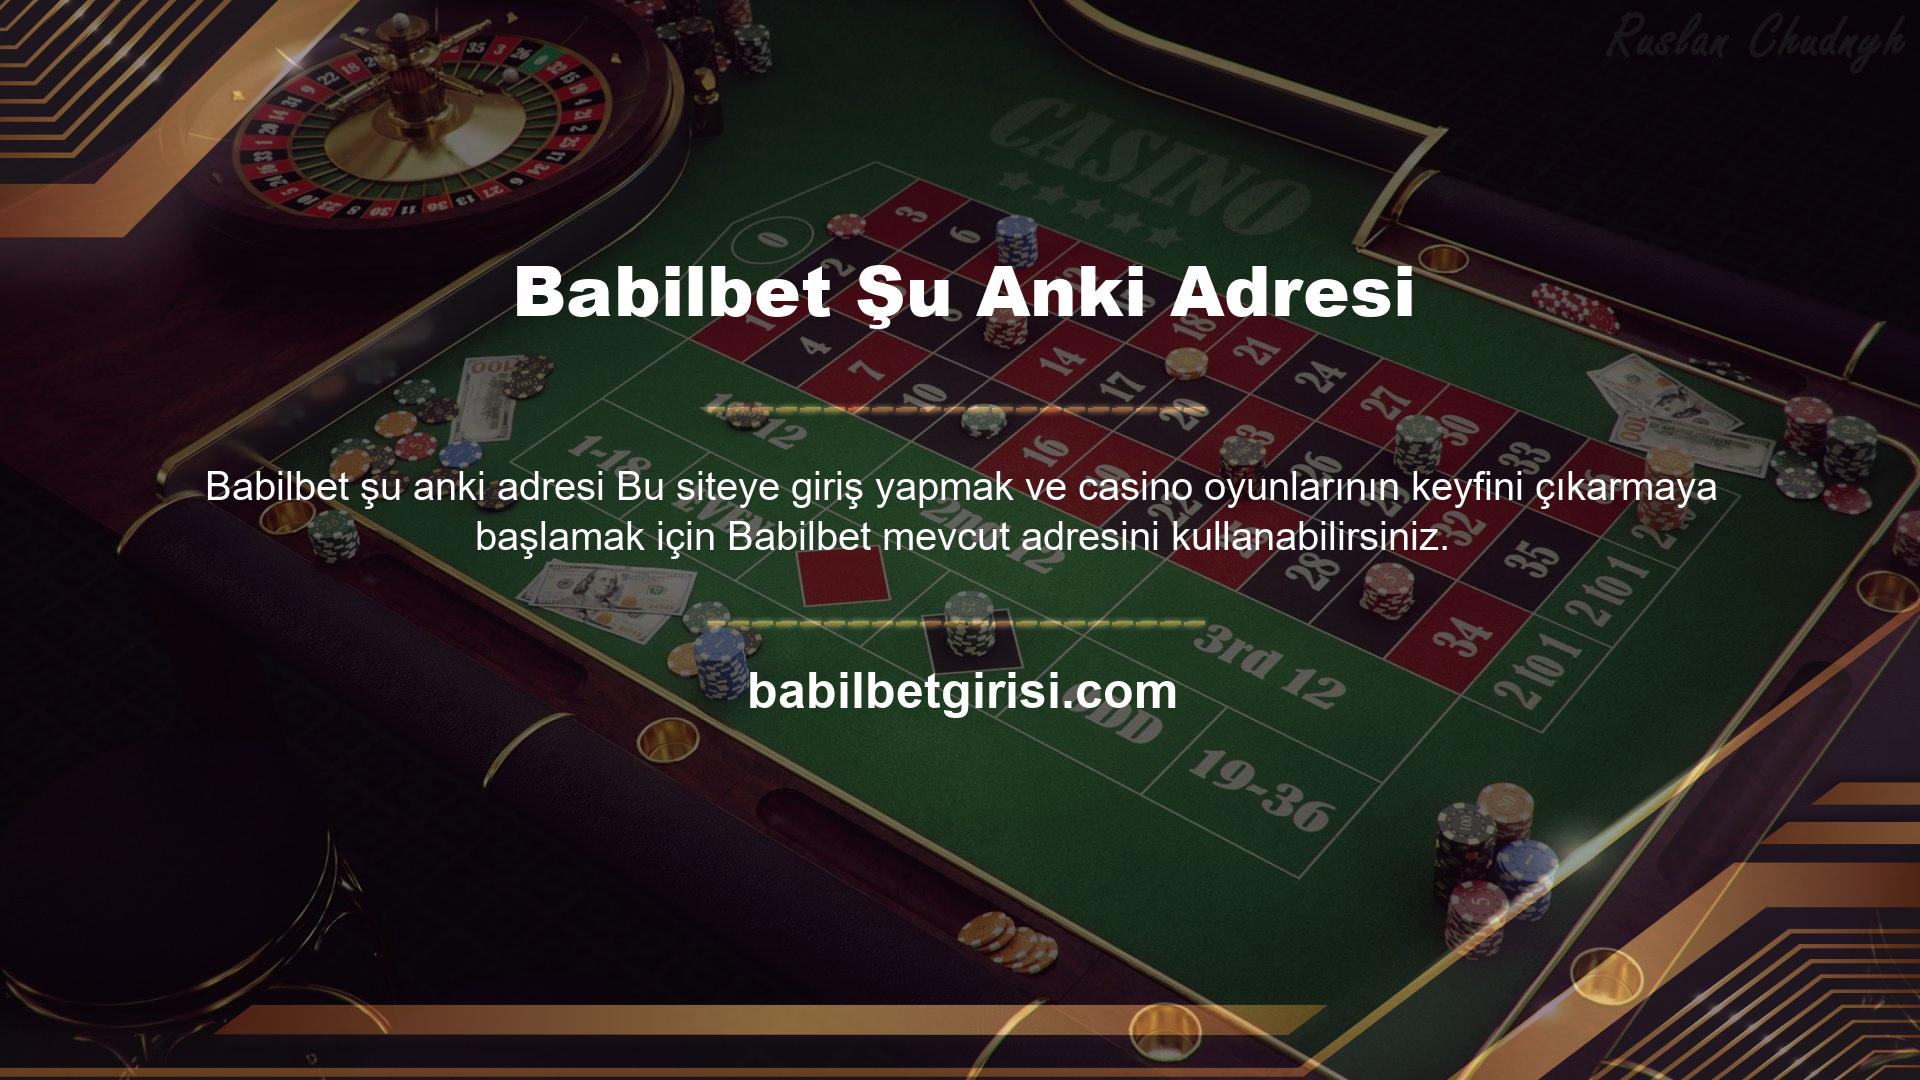 Babilbet bahisleri sadece Babilbet Casino aracılığıyla değil, Canlı Casino aracılığıyla da çok karlı olabilir